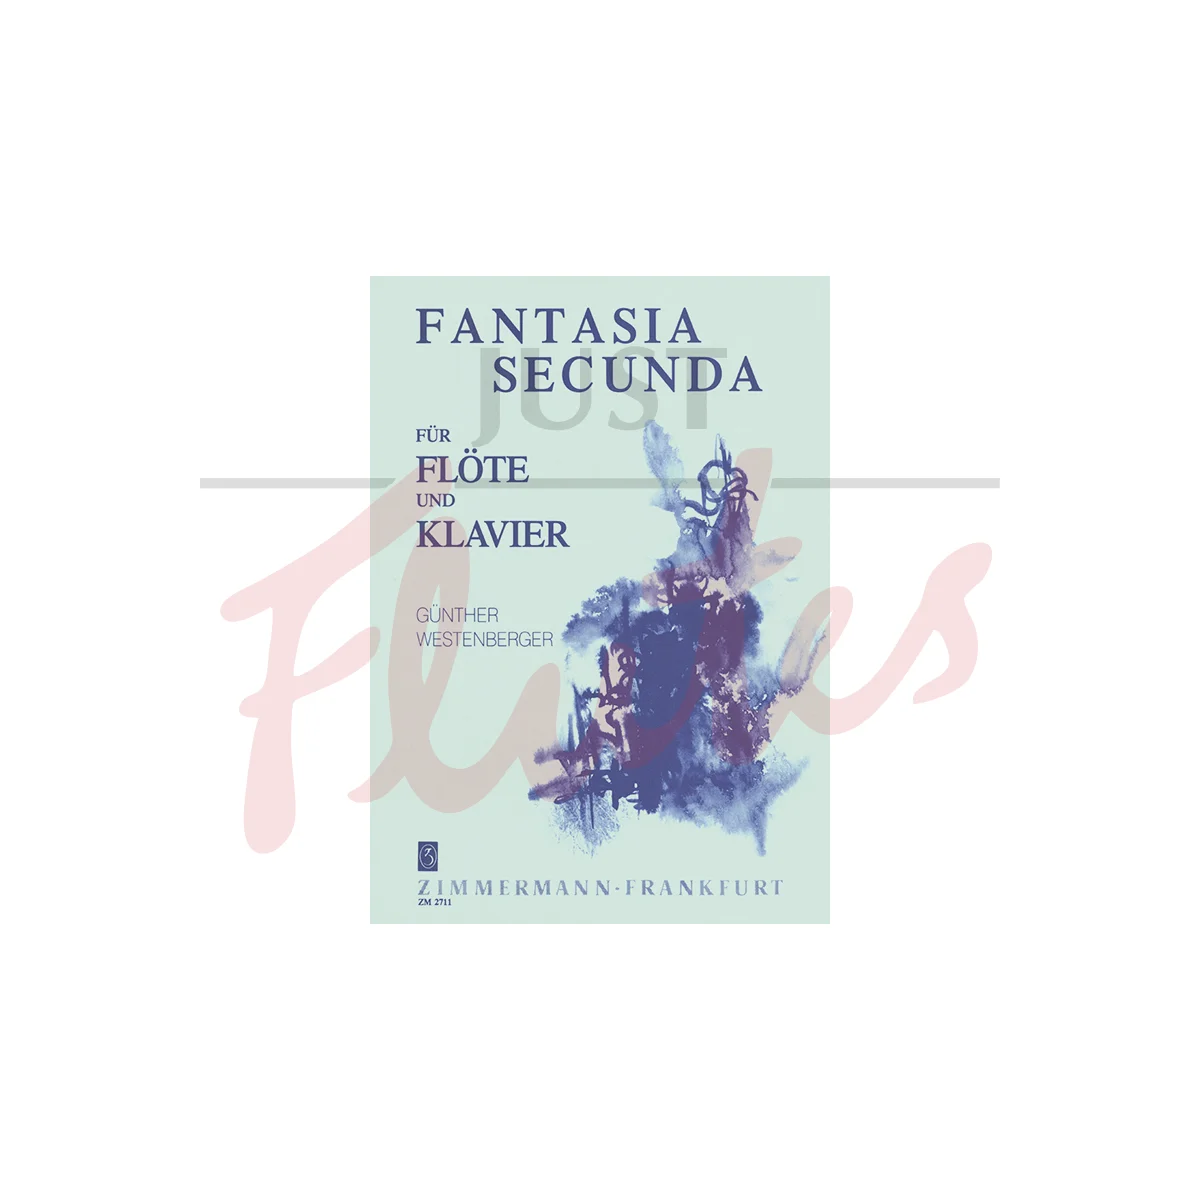 Fantasia Secunda for Flute and Piano